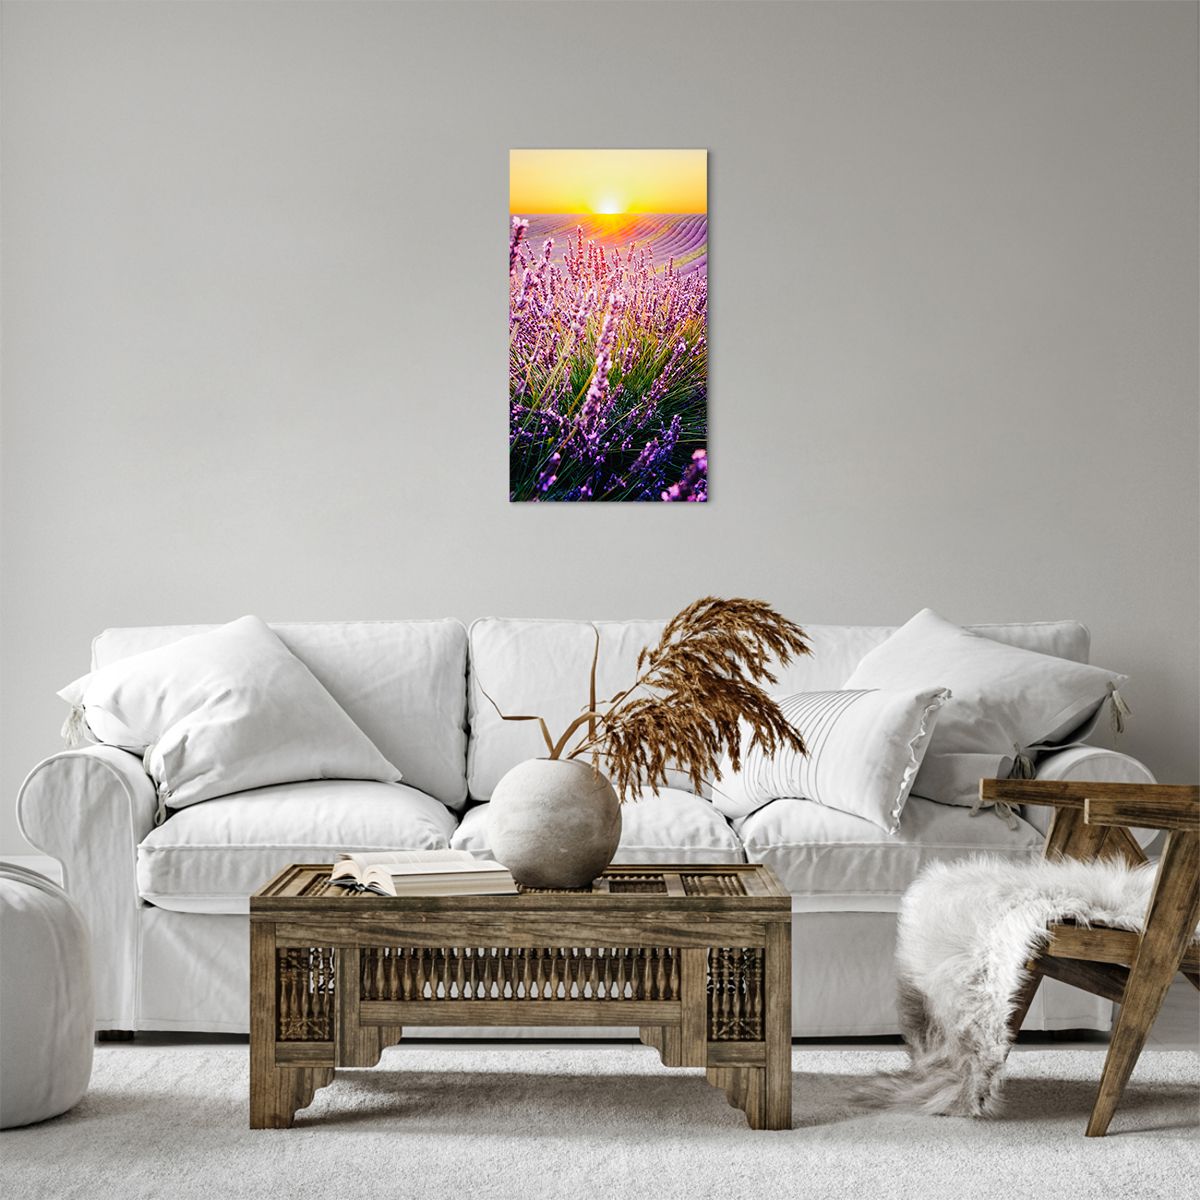 Bild auf Leinwand Landschaft, Bild auf Leinwand Lavendelfeld, Bild auf Leinwand Provence, Bild auf Leinwand Frankreich, Bild auf Leinwand Natur